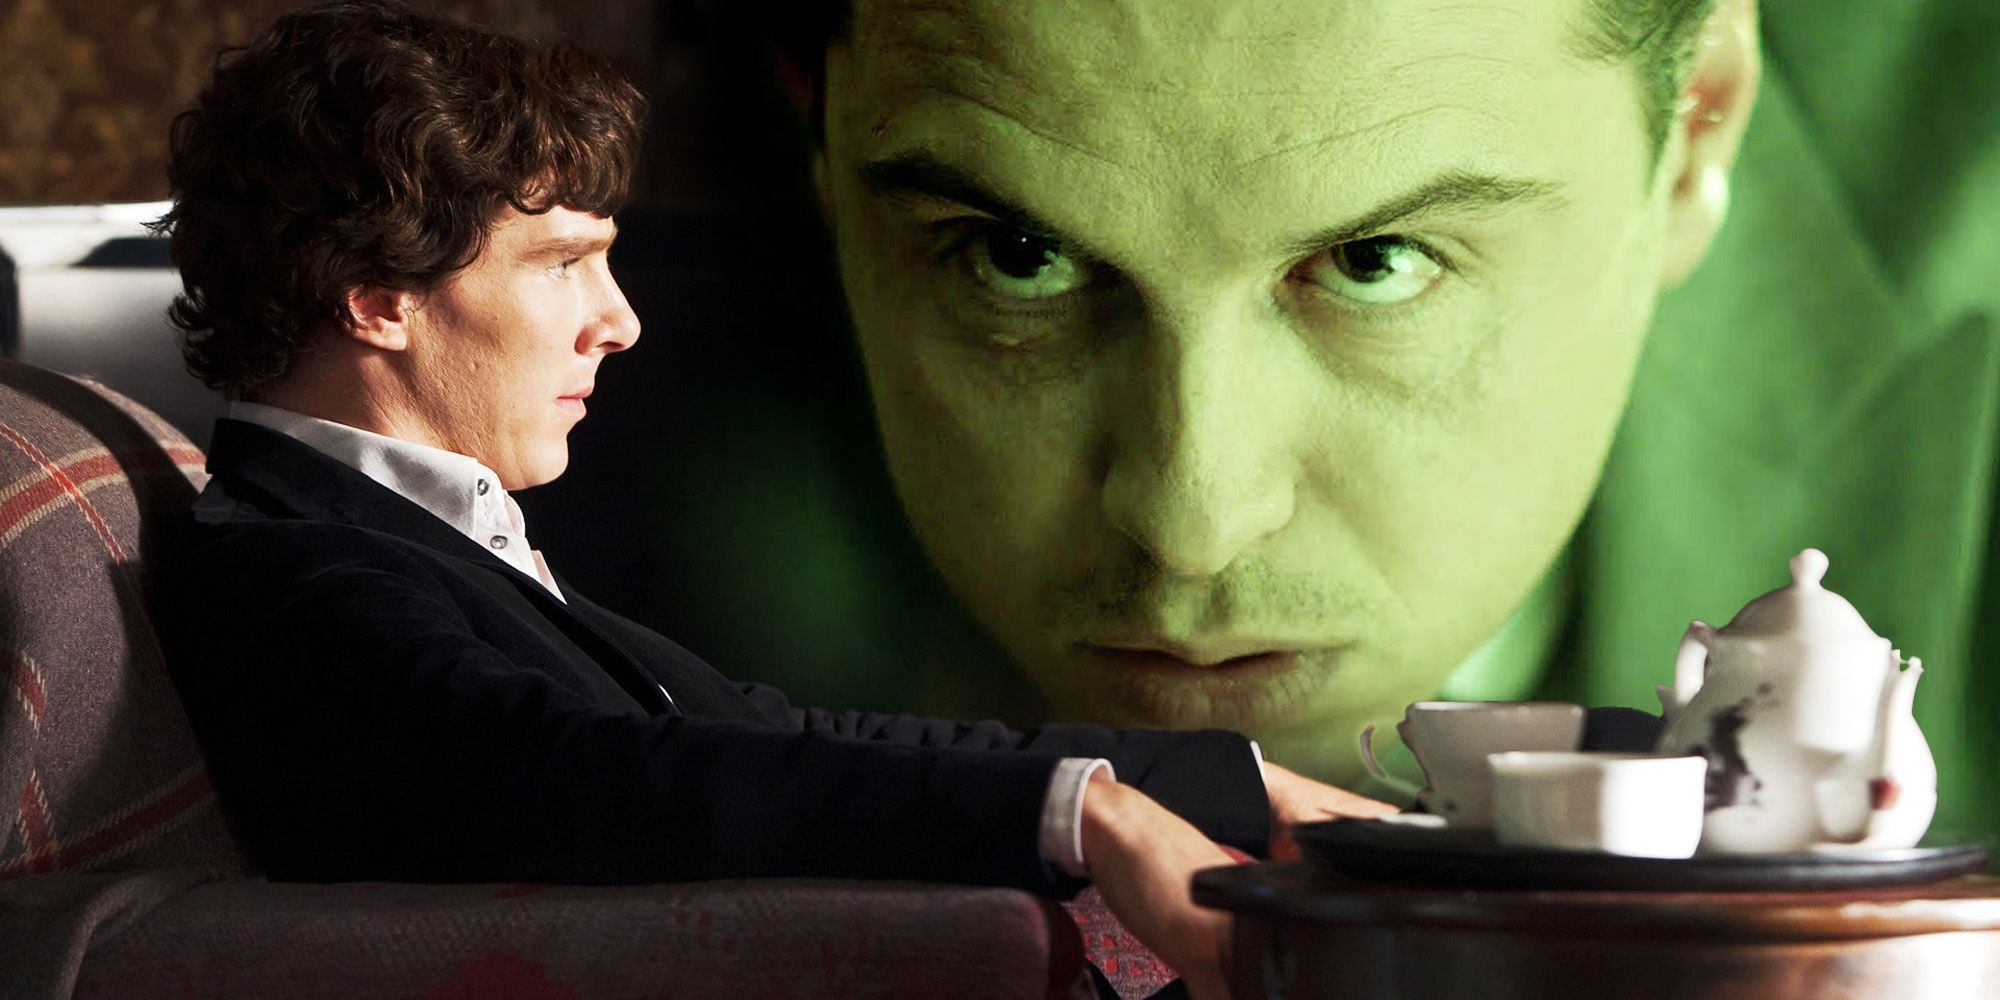 La escena del té de Sherlock y Moriarty muestra de qué se trataba realmente su rivalidad